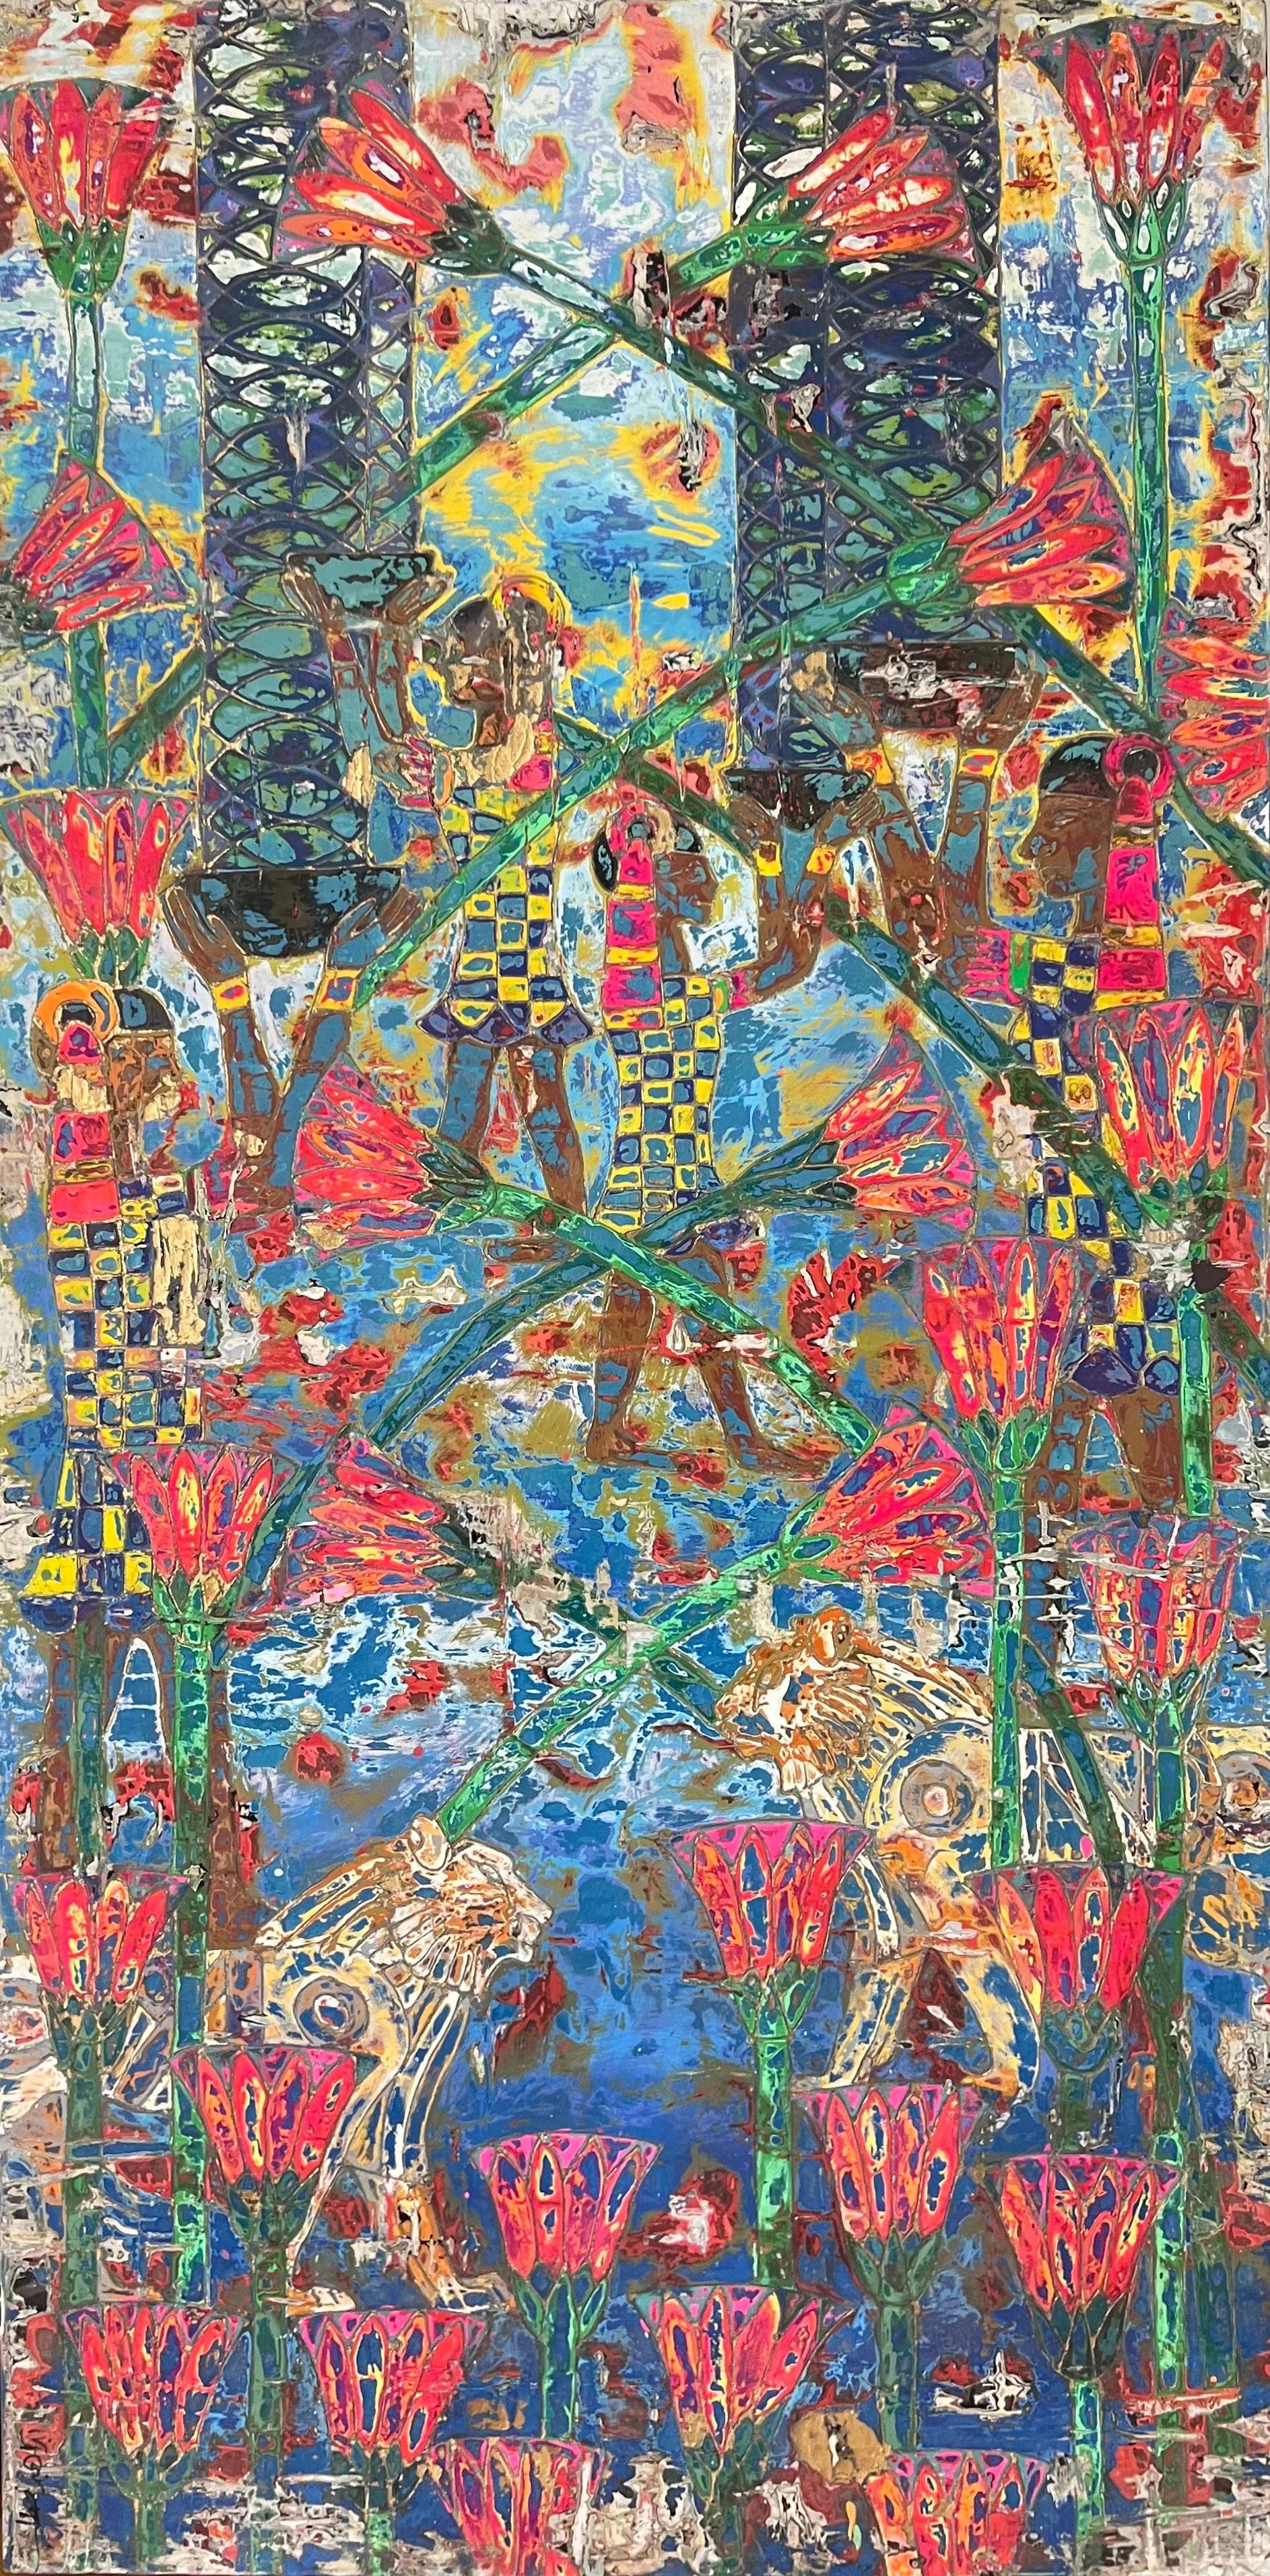 Abstraktes Gemälde „Lotus Löwen“ 71" x 35" in von Ibrahim Khatab

Ibrahim Khatab wurde 1984 in Kairo geboren, arbeitet als Co-Dozent an der Universität Kairo und mischt in seinen Werken Malerei, Videokunst und Installation. Er begann schon in seiner